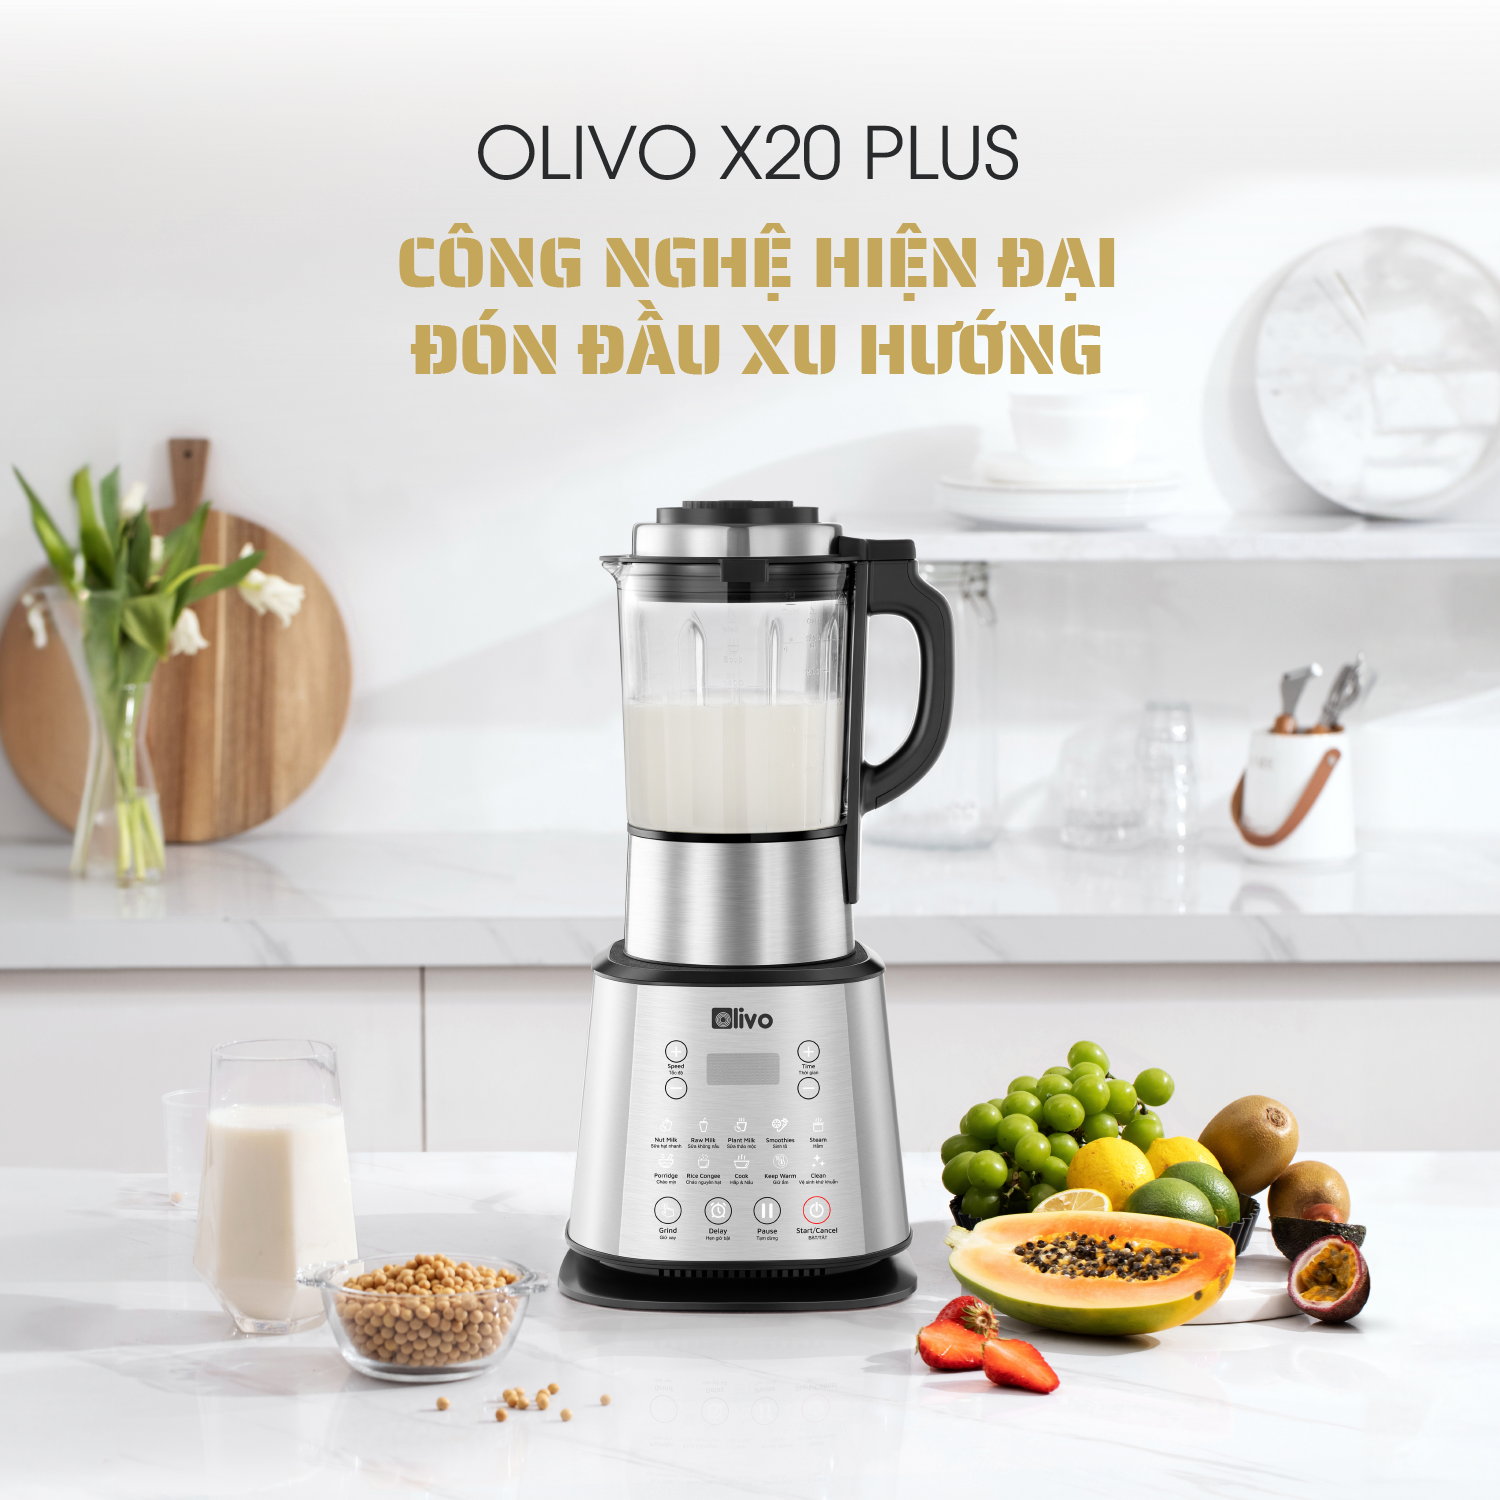 Máy làm sữa hạt OLIVO X20 PLUS - phụ kiện nhà bếp chị em nào cũng mê